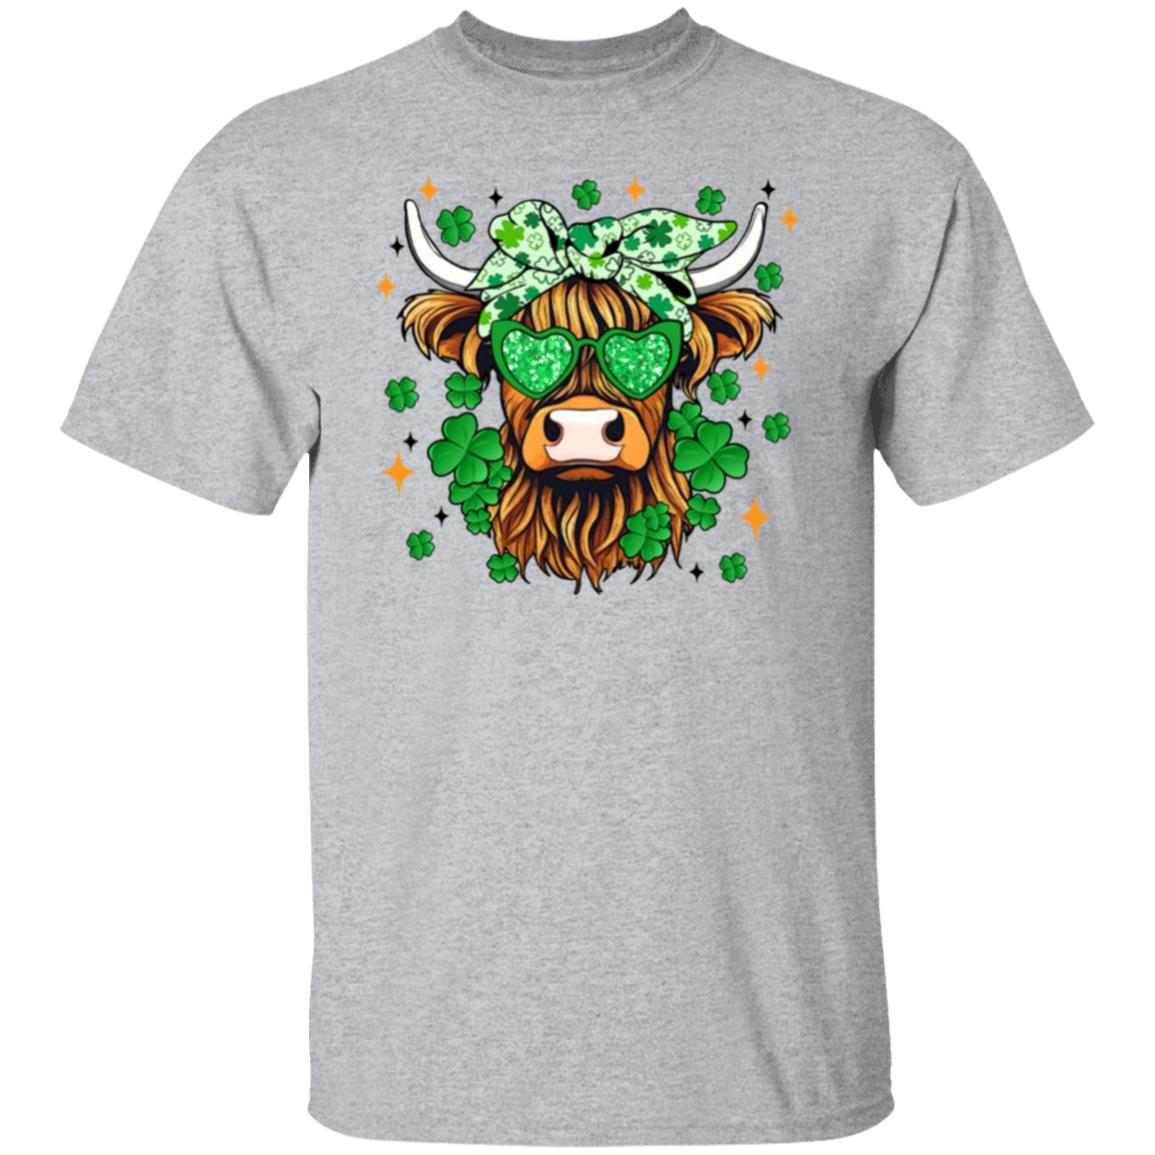 Shamrock Highland Cow 5.3 oz. T-Shirt